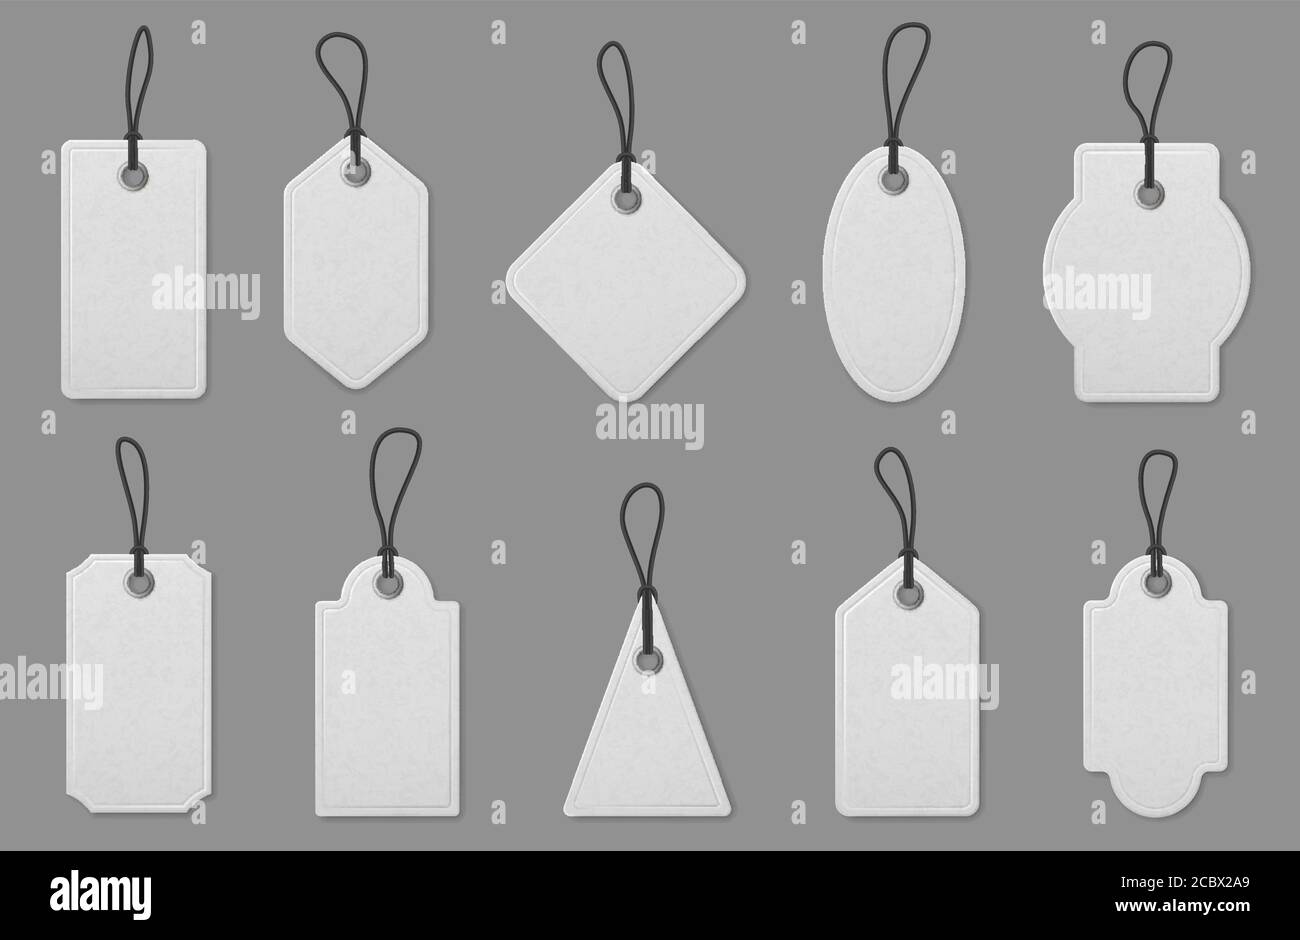 Preisschild-Karten. Realistische weiße Shopping-Etiketten mit Seilen, hängende Tags für die Kennzeichnung der Preisgestaltung, Vintage-Papier Label Mockup Vektor-Set Stock Vektor